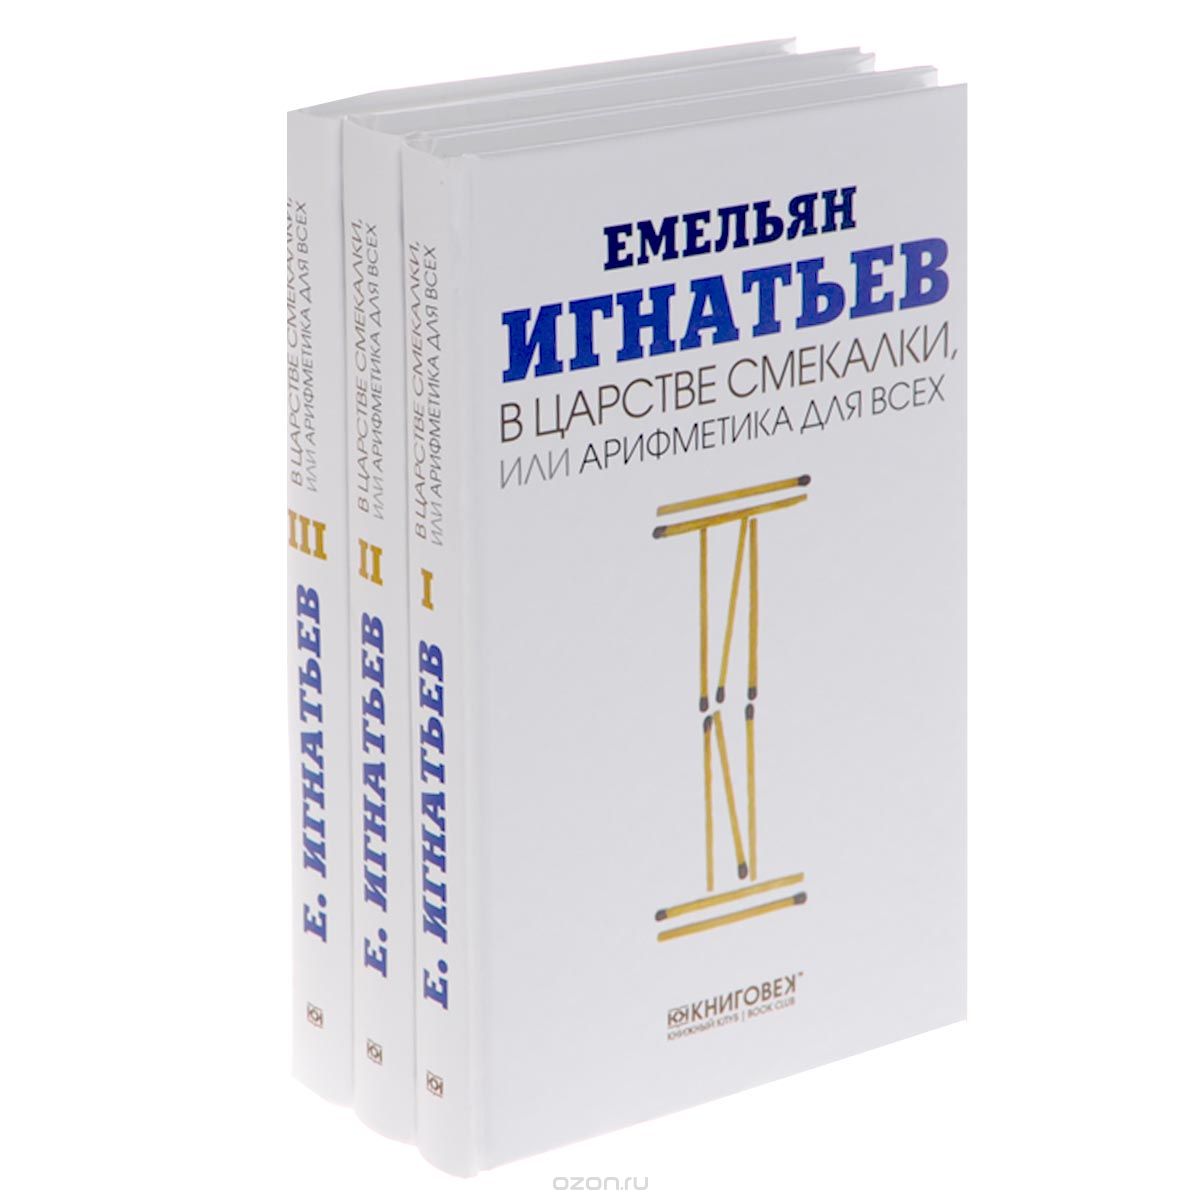 В царстве смекалки, или Арифметика для всех (комплект из 3 книг), Емельян Игнатьев